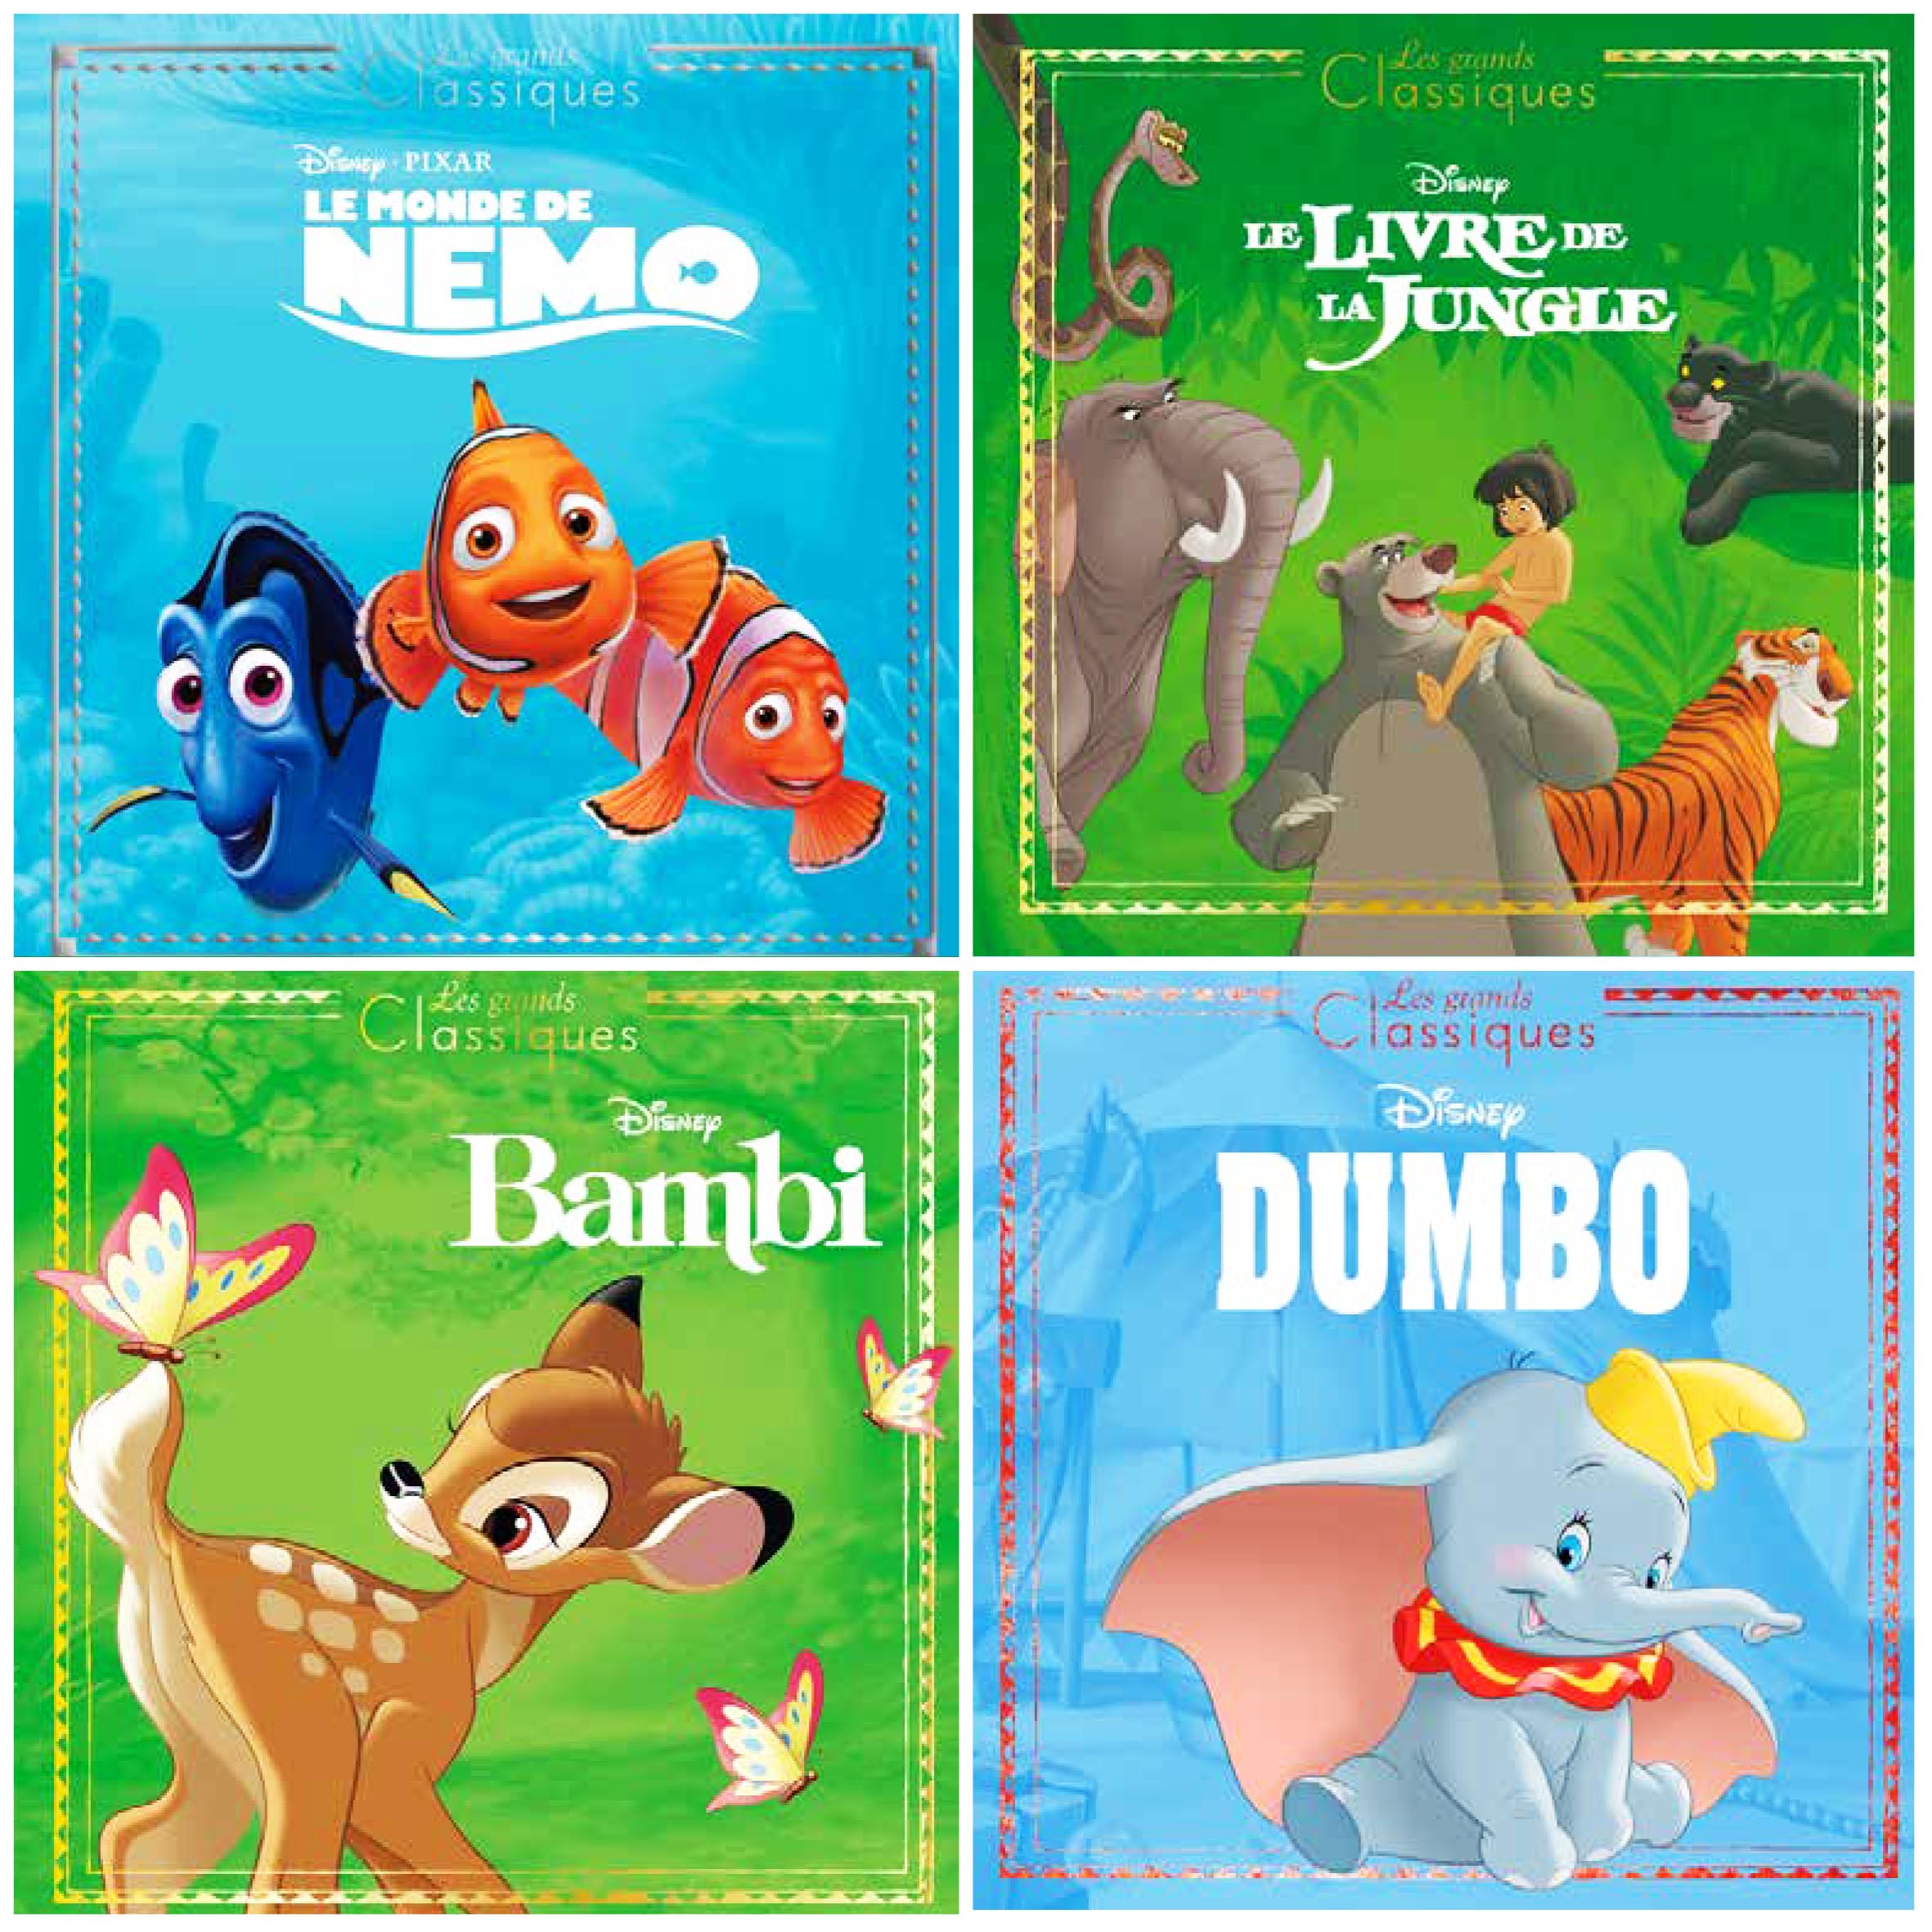 Les grands classiques : Disney - 2016287969 - Livres pour enfants